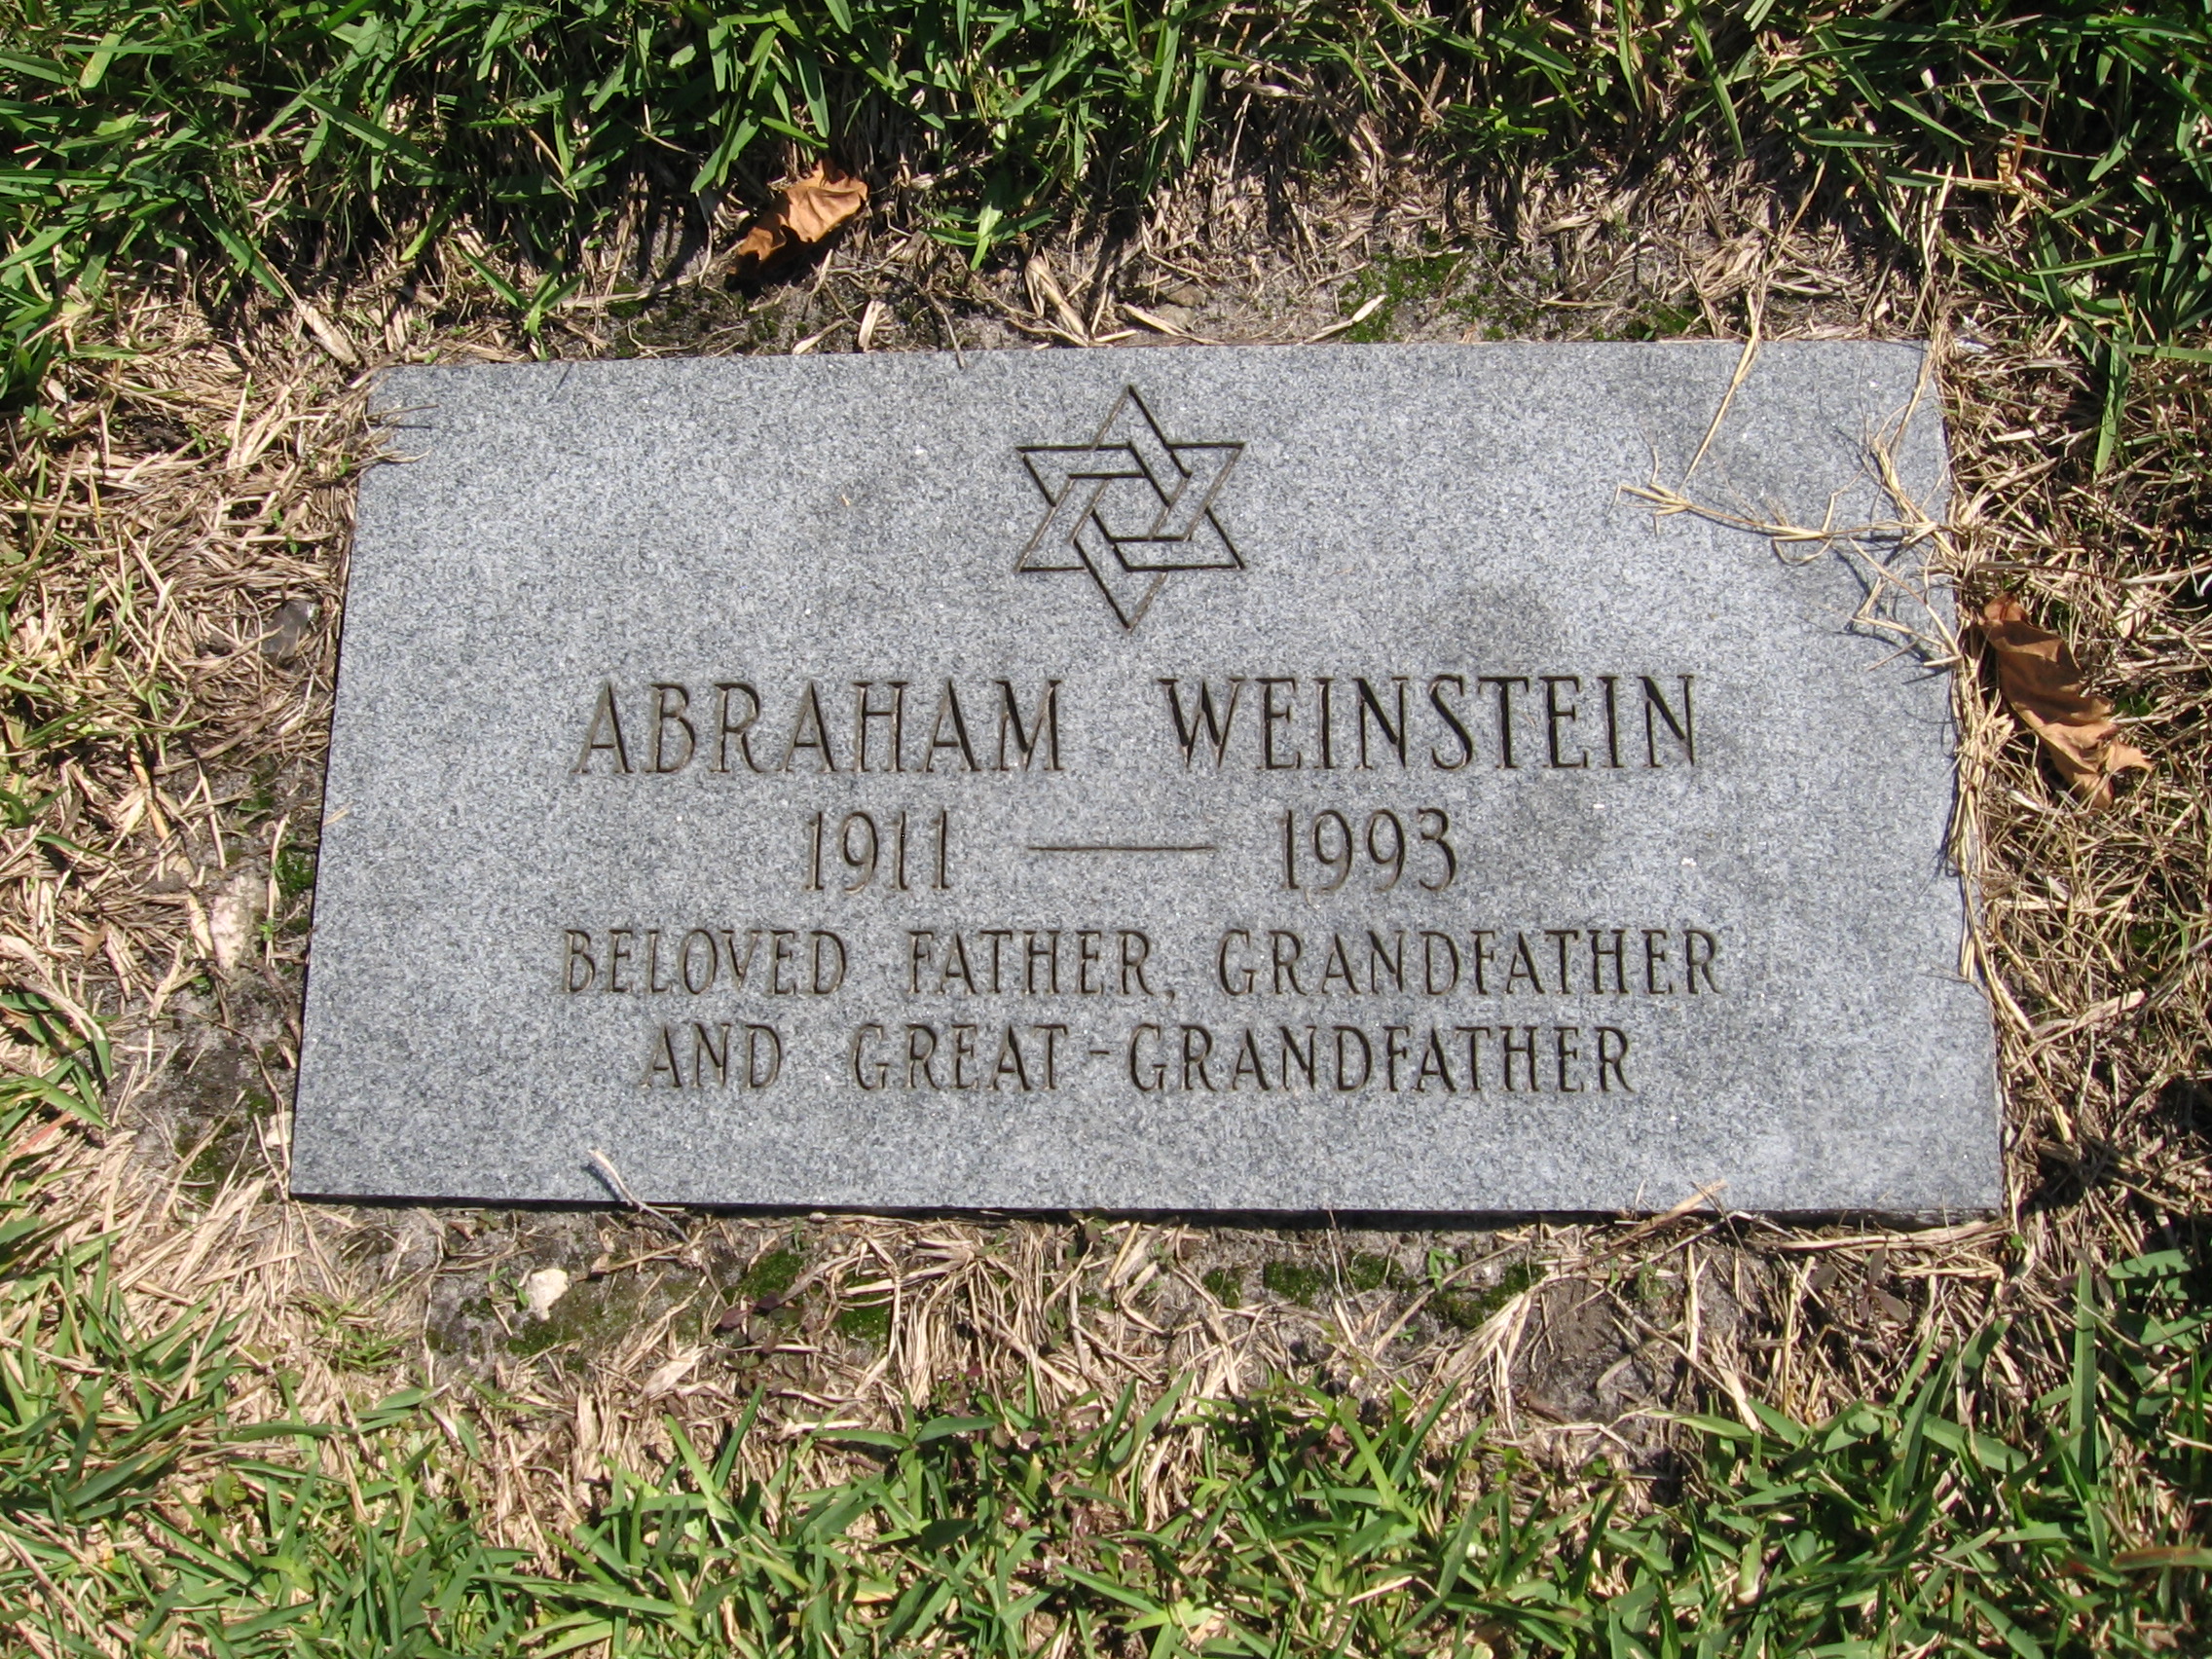 Abraham Weinstein